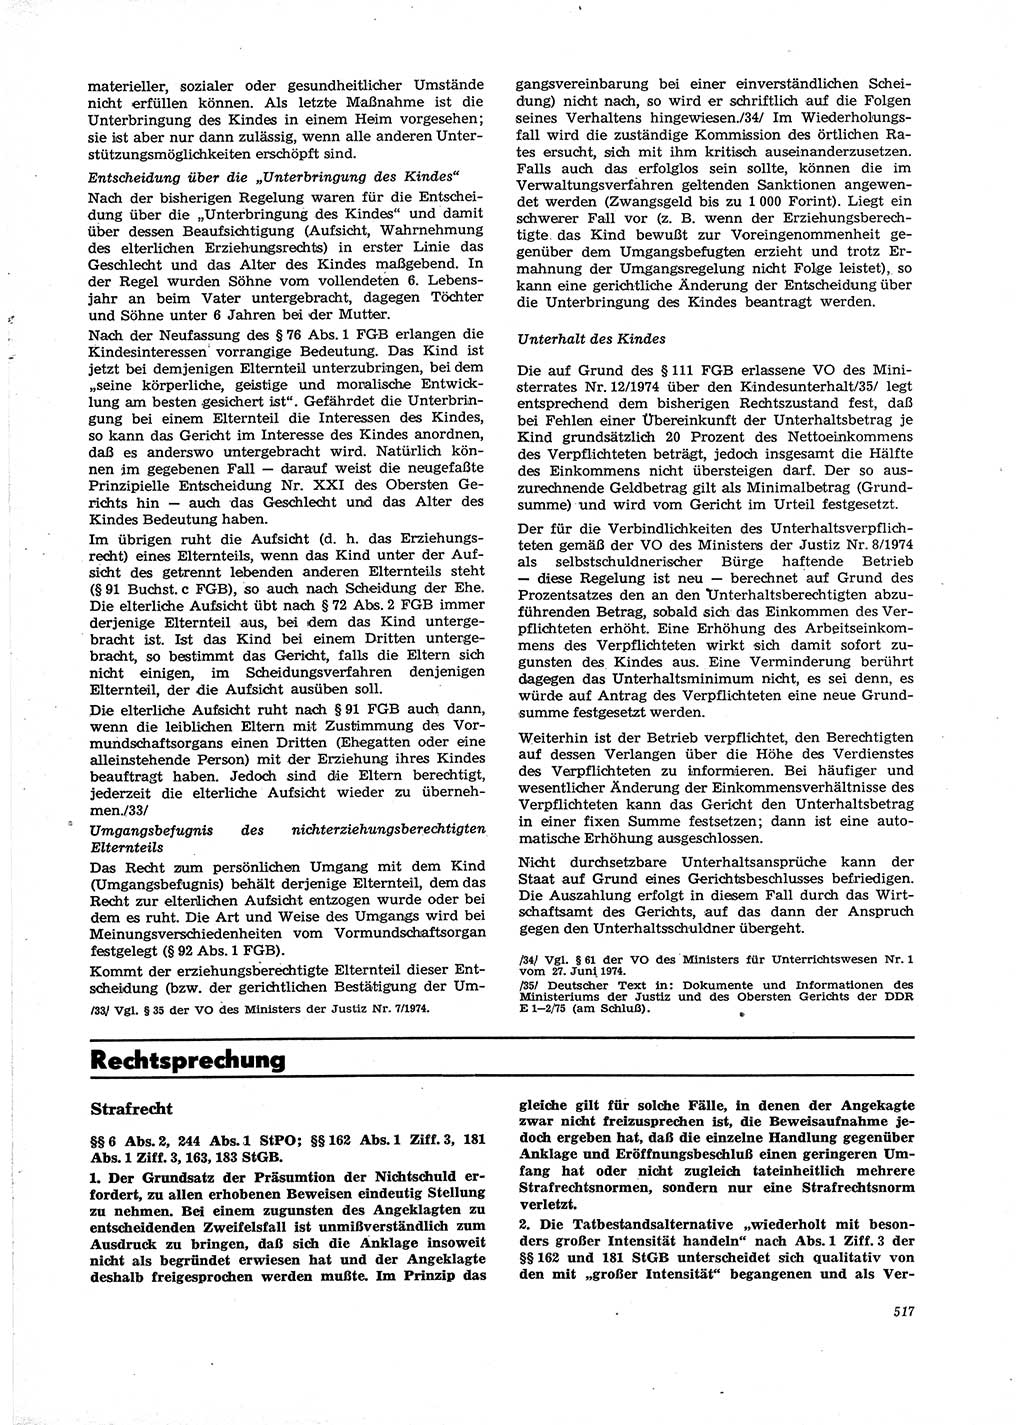 Neue Justiz (NJ), Zeitschrift für Recht und Rechtswissenschaft [Deutsche Demokratische Republik (DDR)], 29. Jahrgang 1975, Seite 517 (NJ DDR 1975, S. 517)